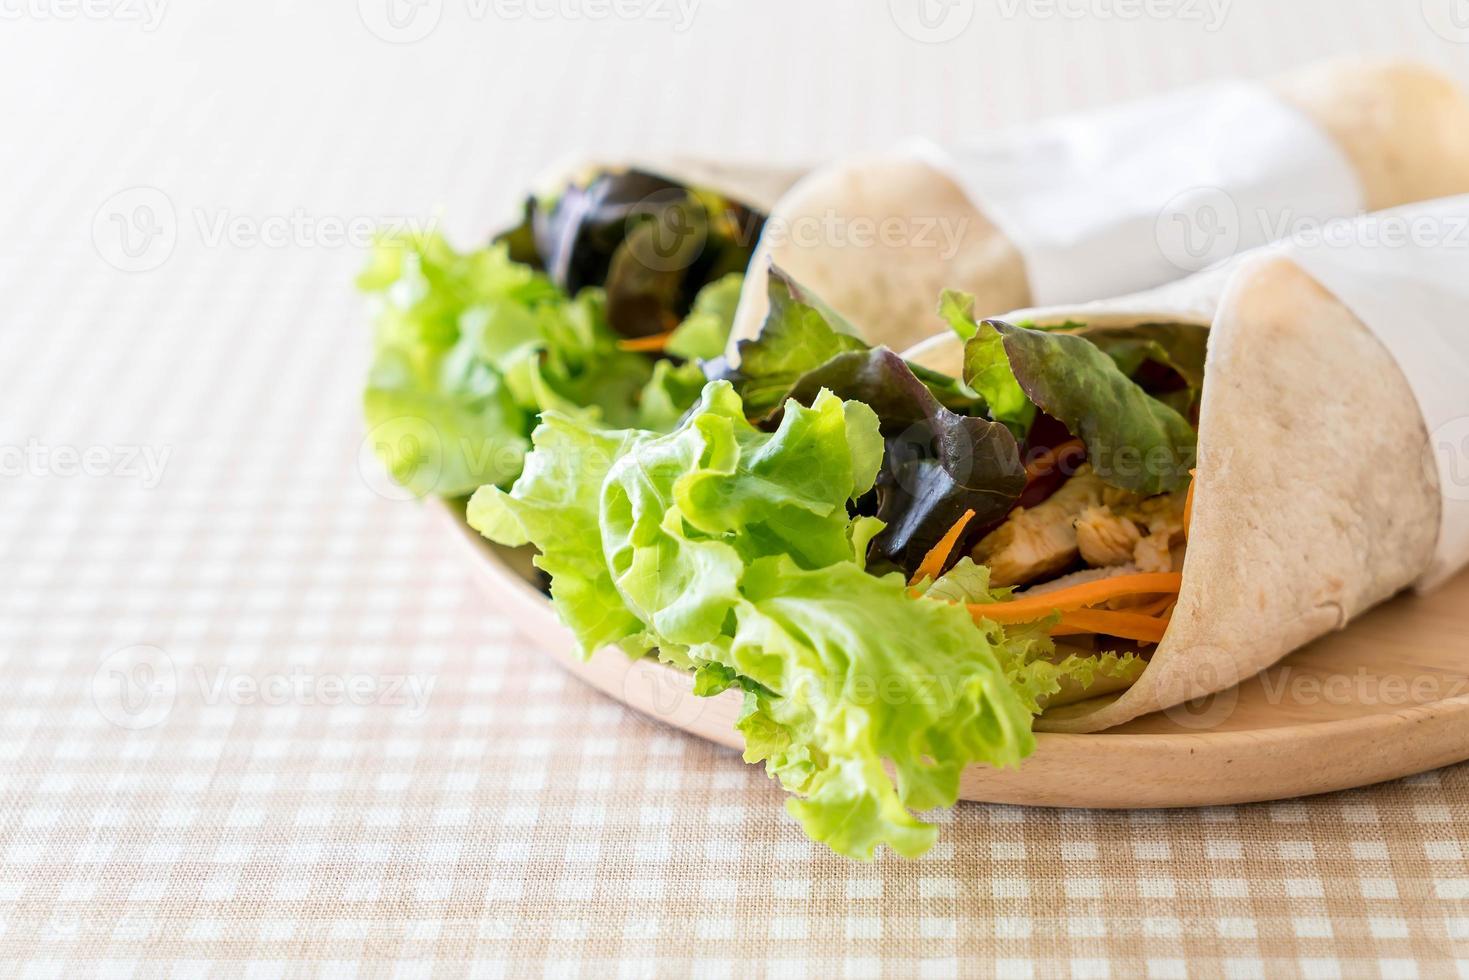 envelopper le rouleau de salade sur la table photo